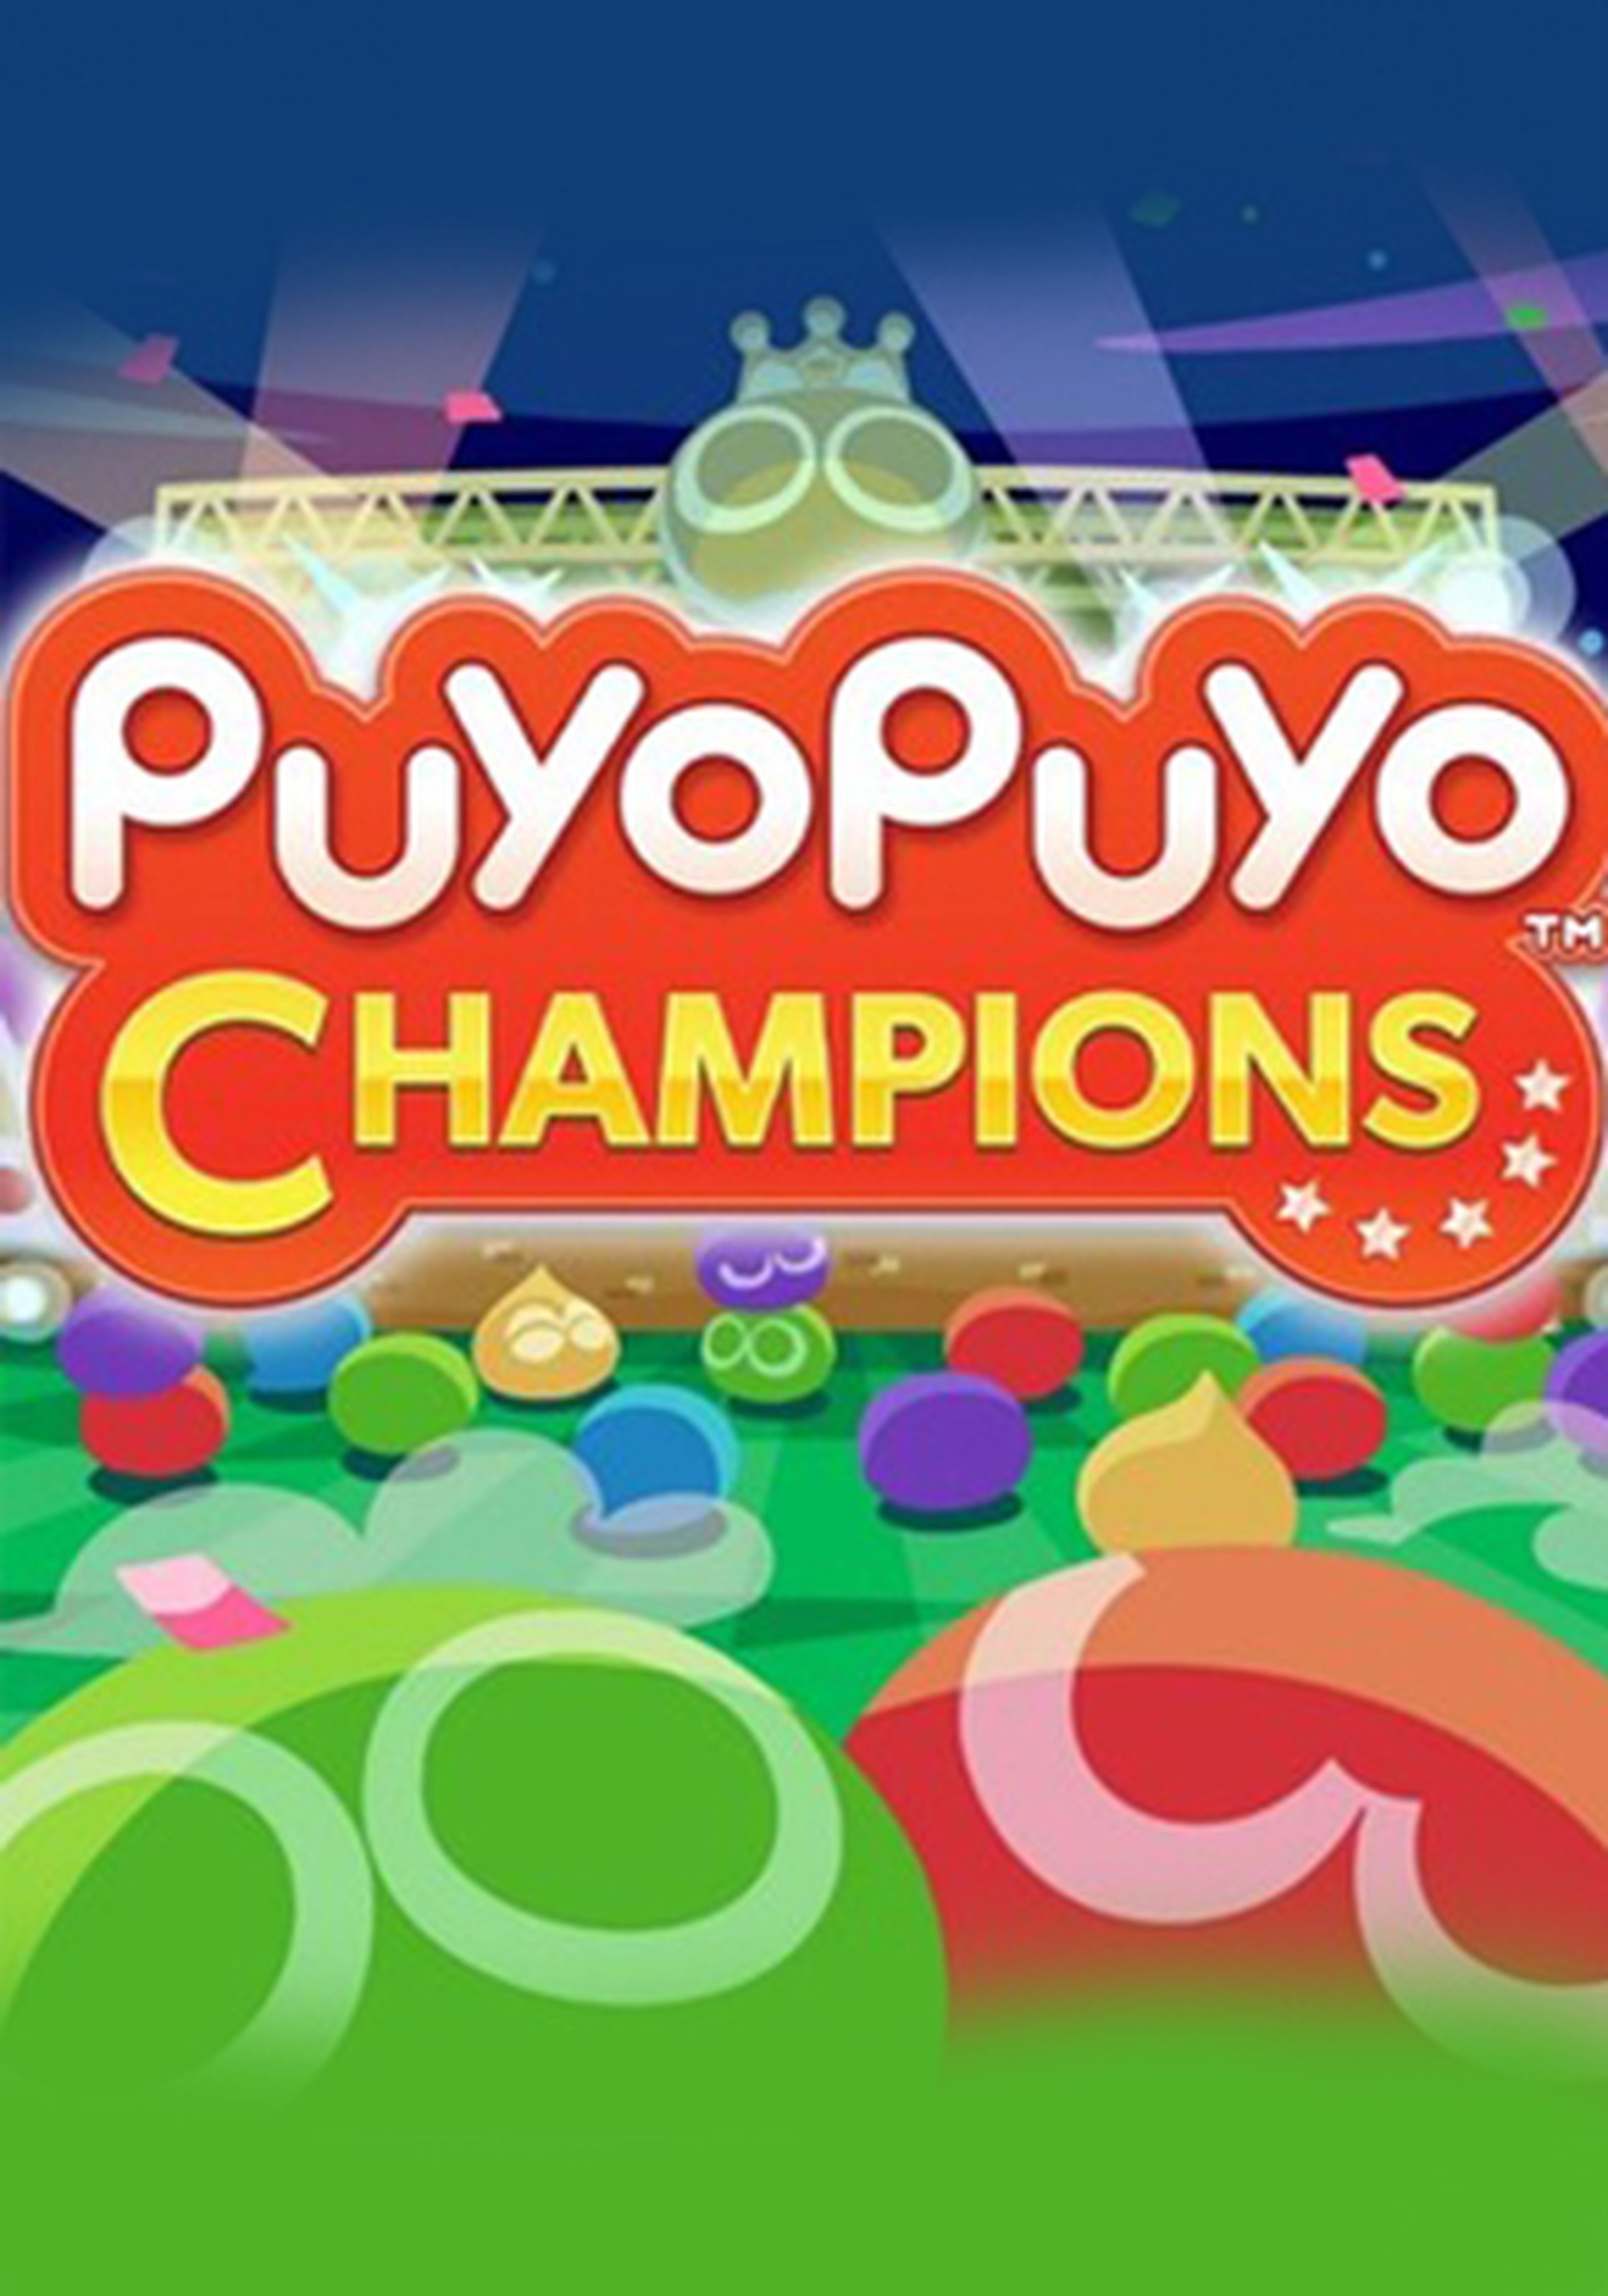 Puyo Puyo Champions cartel